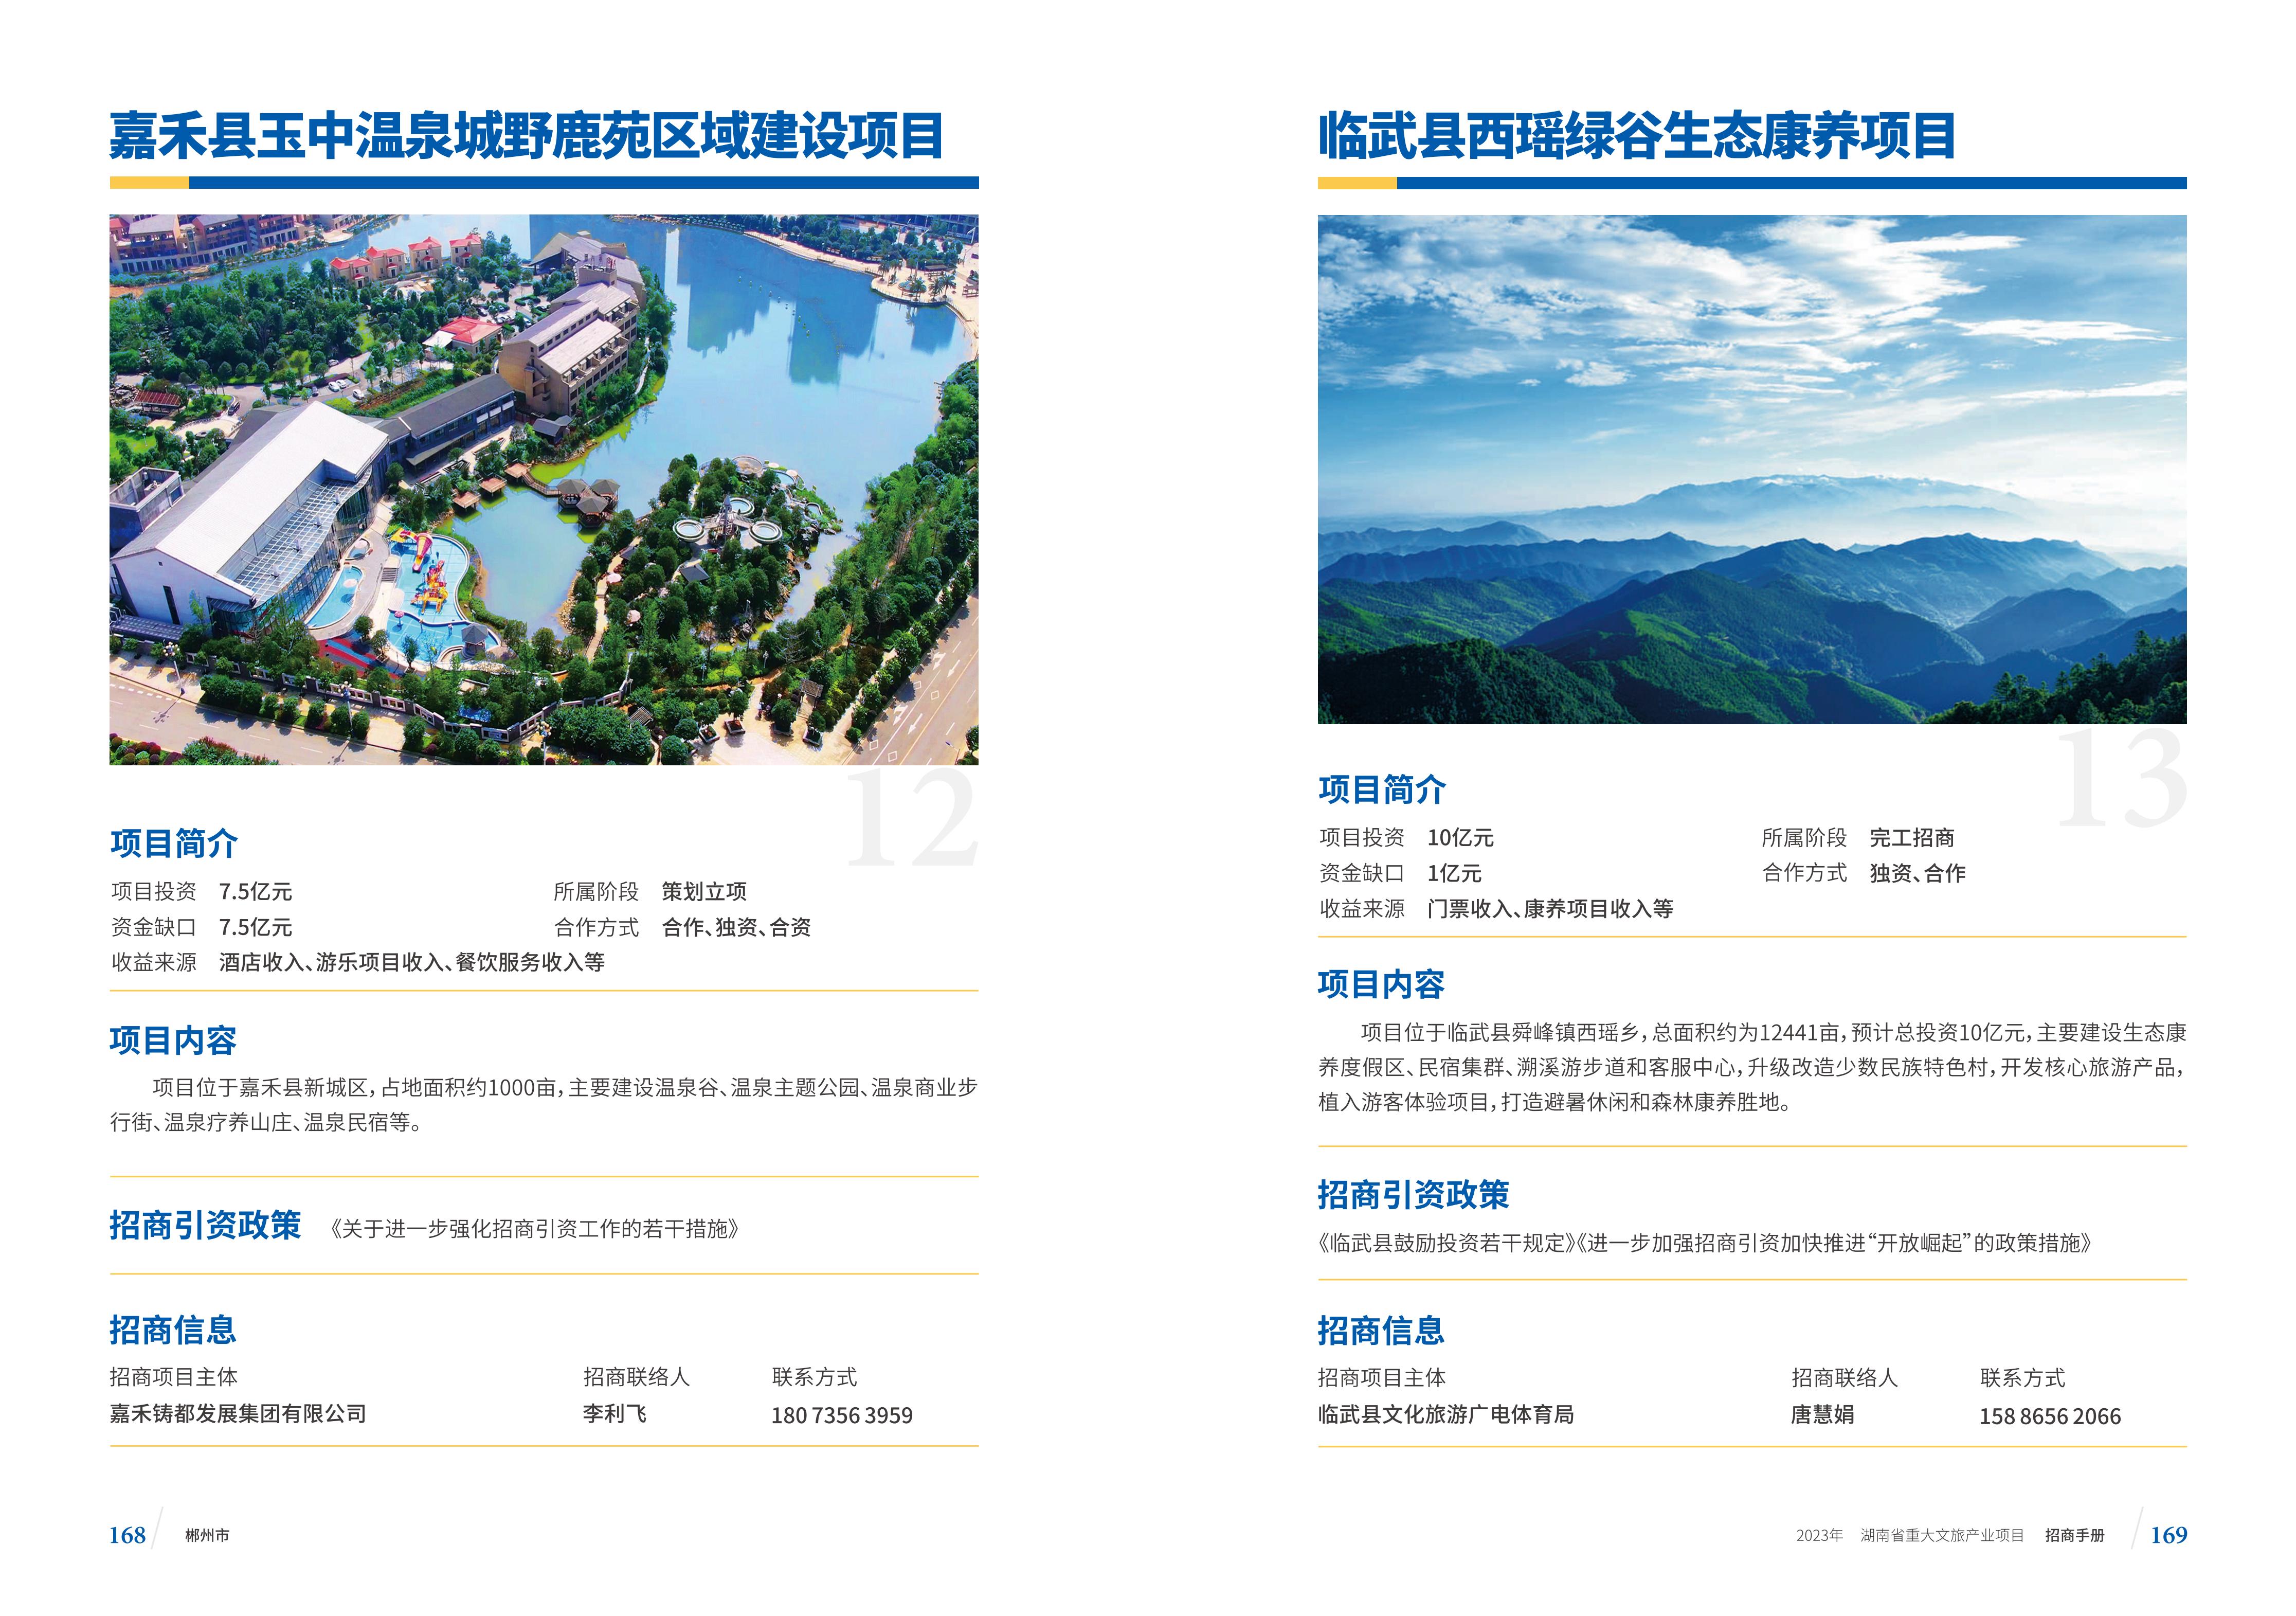 湖南省重大文旅产业项目招手册线上链接版_92.jpg